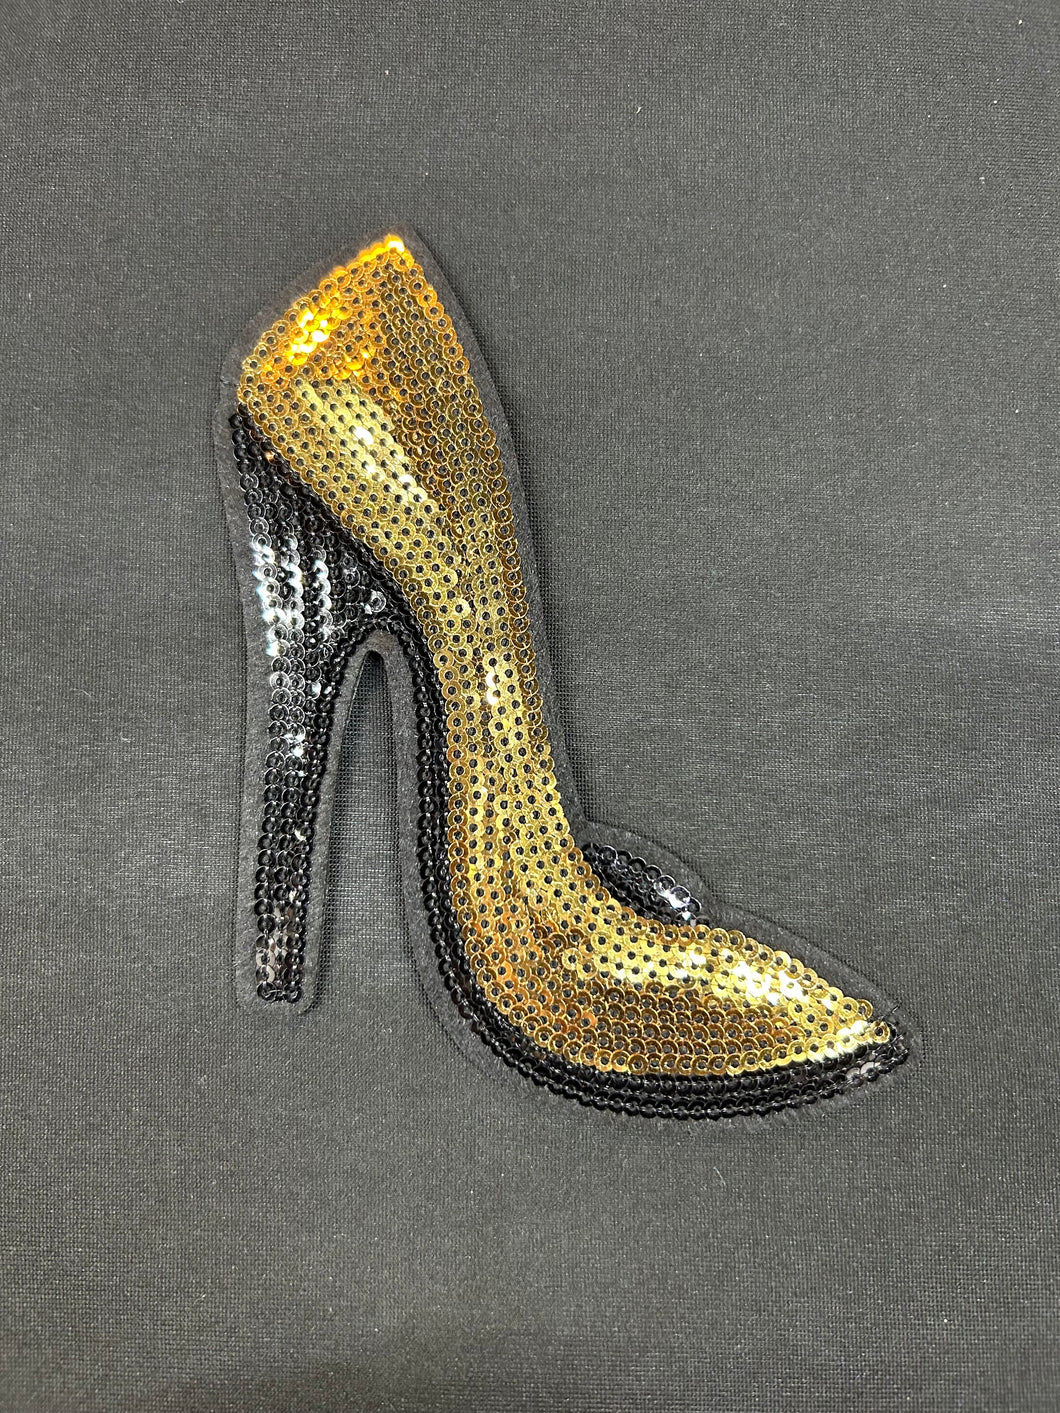 Gold heel